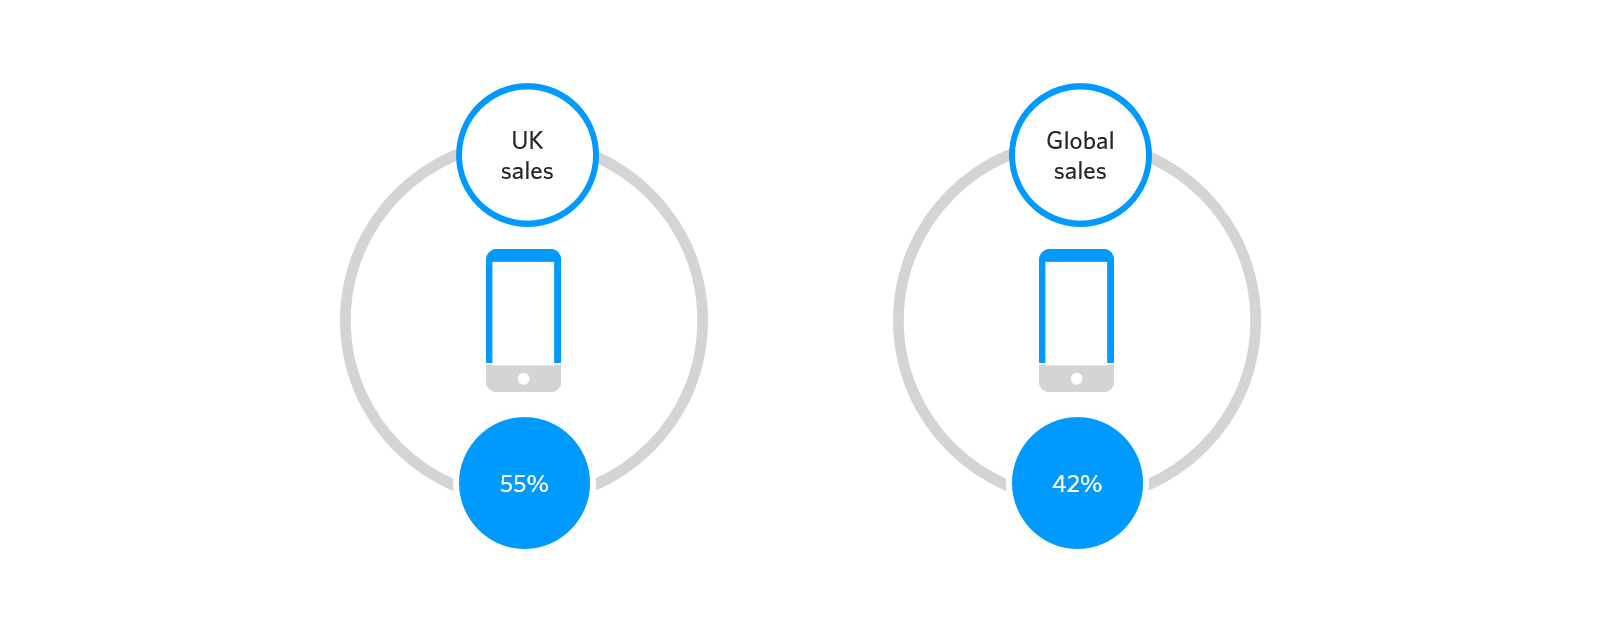 UK global split